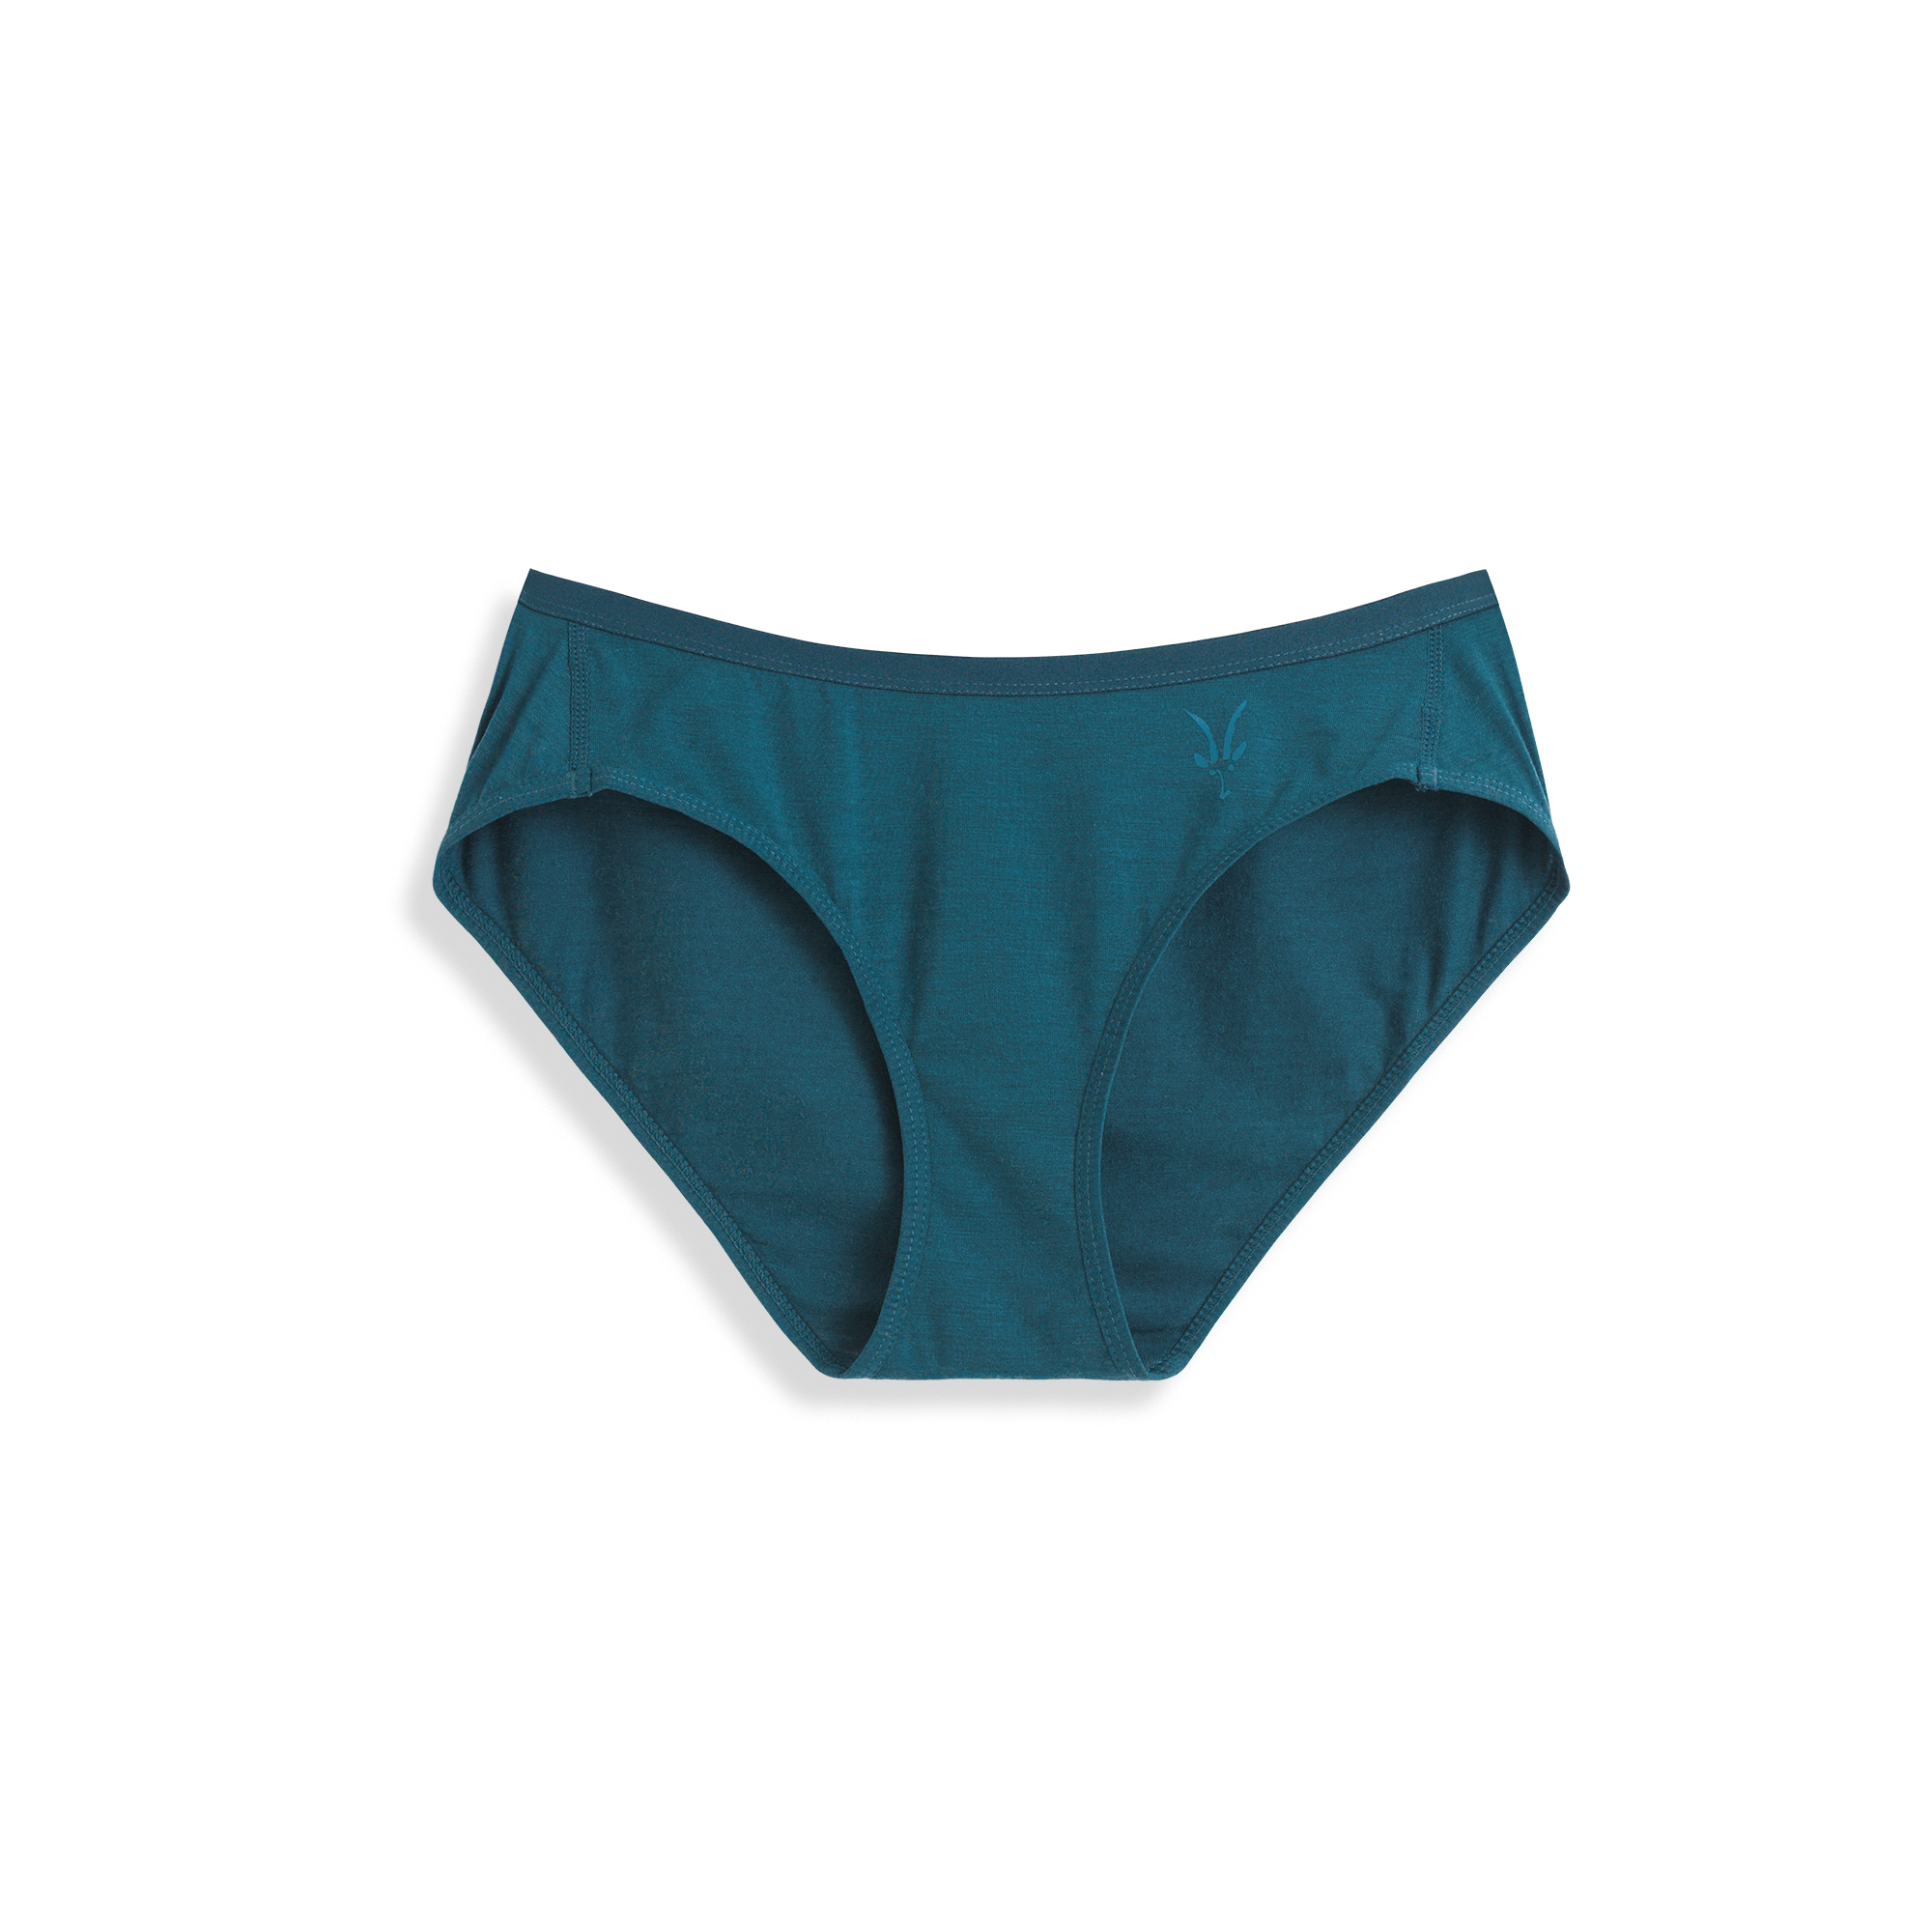 Kepler Boxers Women's Ultrafine Merino Underwear